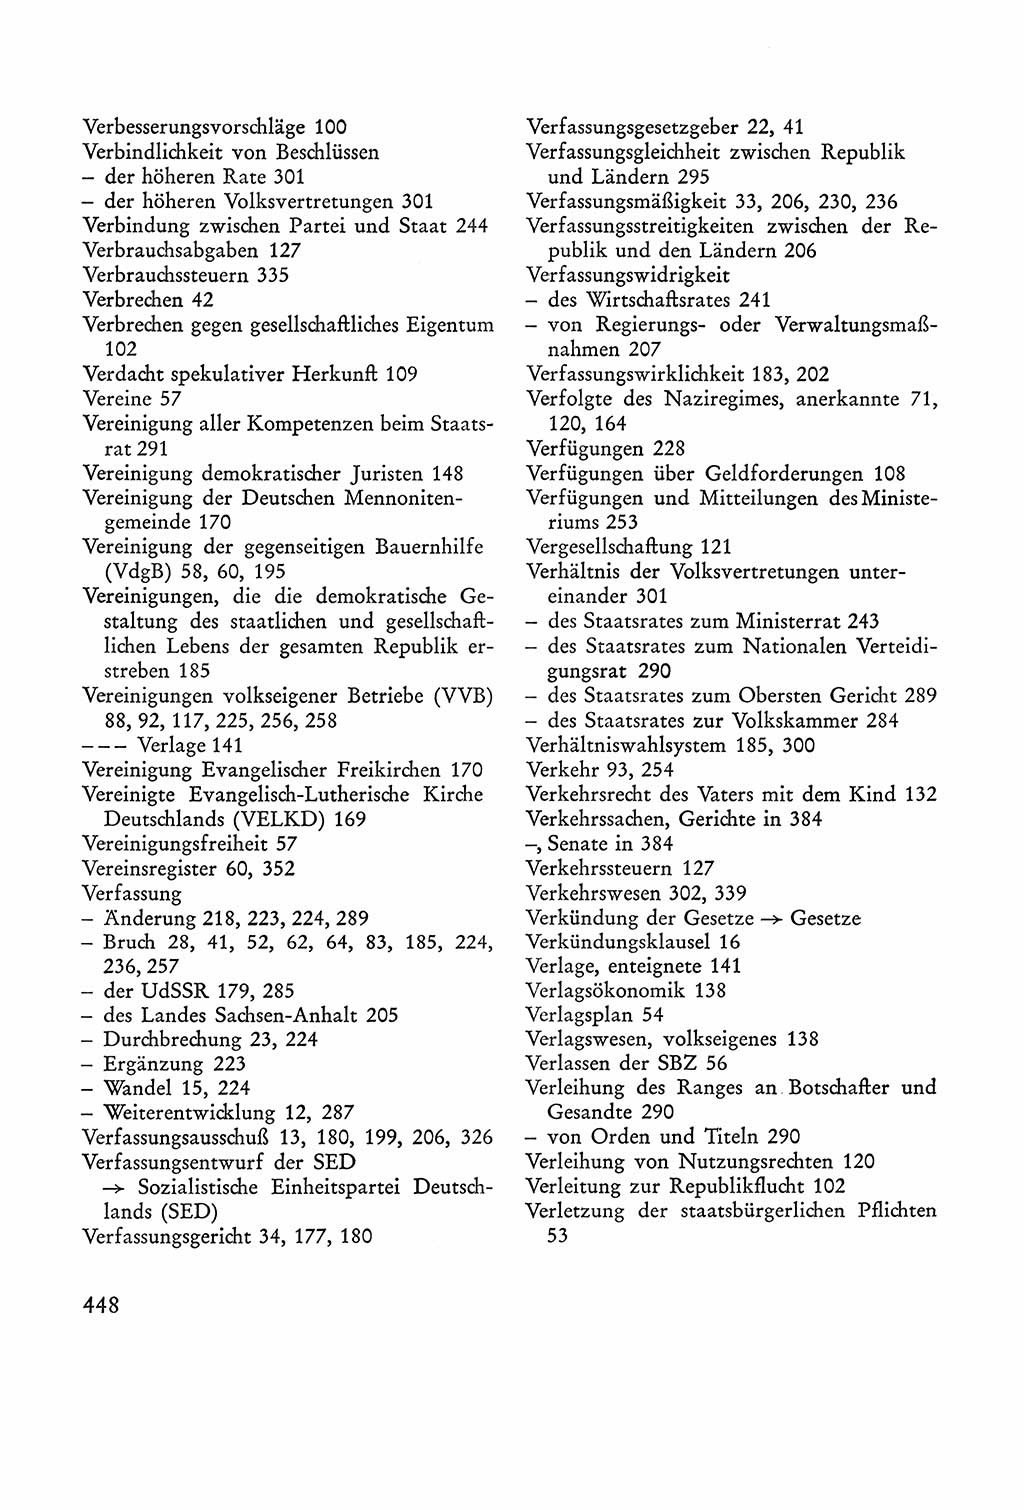 Verfassung der Sowjetischen Besatzungszone (SBZ) Deutschlands [Deutsche Demokratische Republik (DDR)], Text und Kommentar [Bundesrepublik Deutschland (BRD)] 1962, Seite 448 (Verf. SBZ Dtl. DDR Komm. BRD 1962, S. 448)